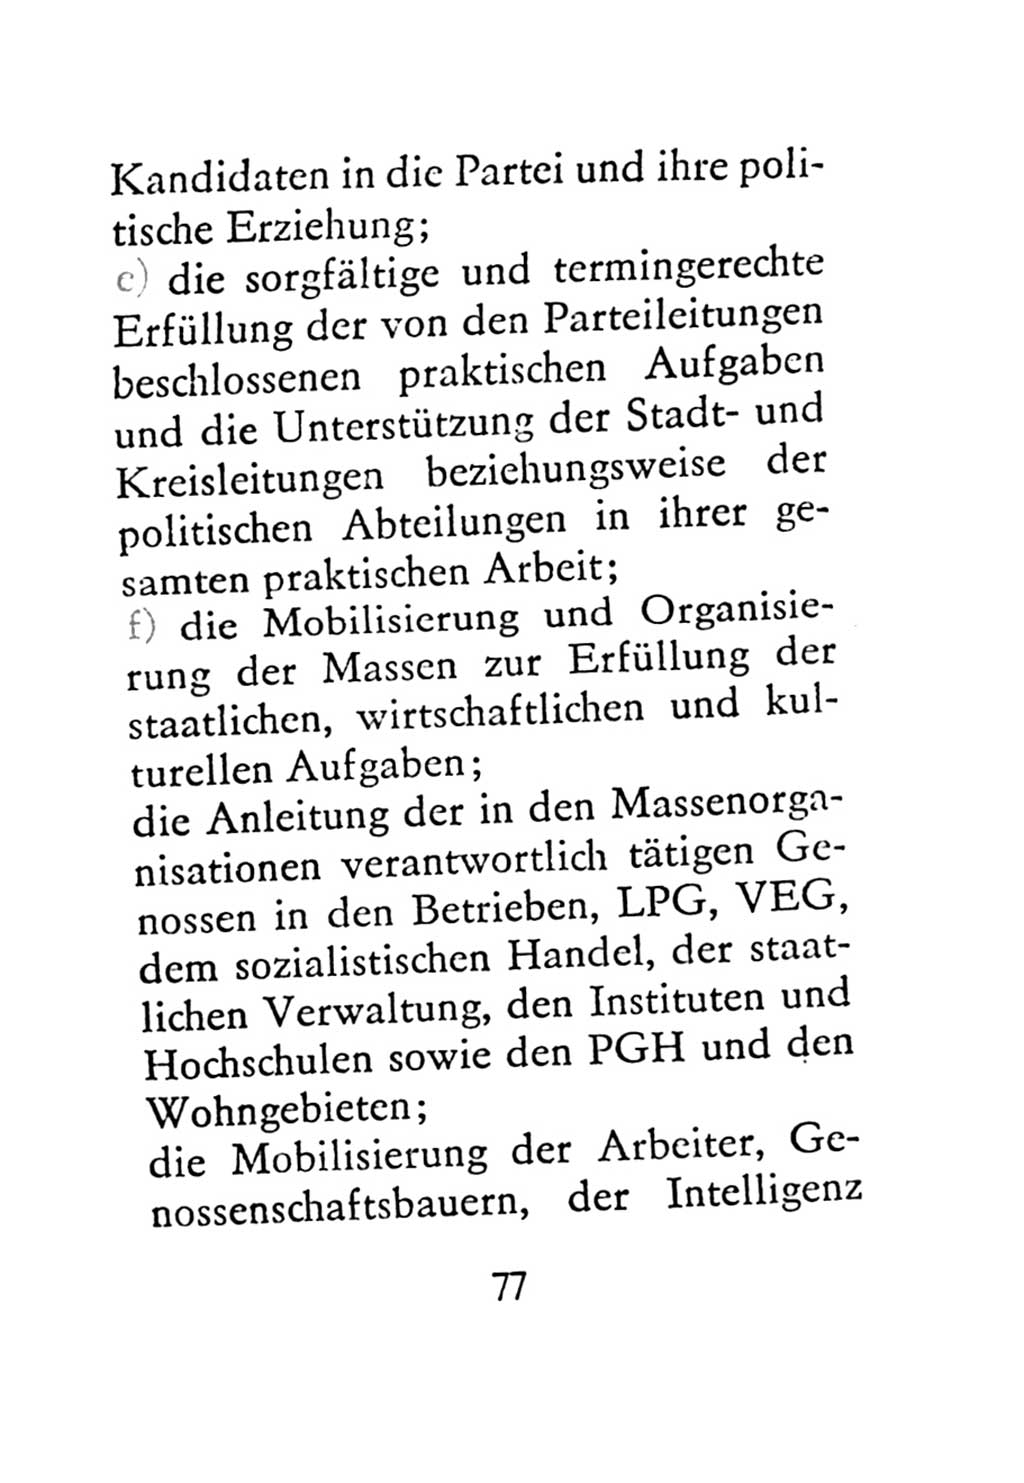 Statut der Sozialistischen Einheitspartei Deutschlands (SED) 1971, Seite 77 (St. SED DDR 1971, S. 77)